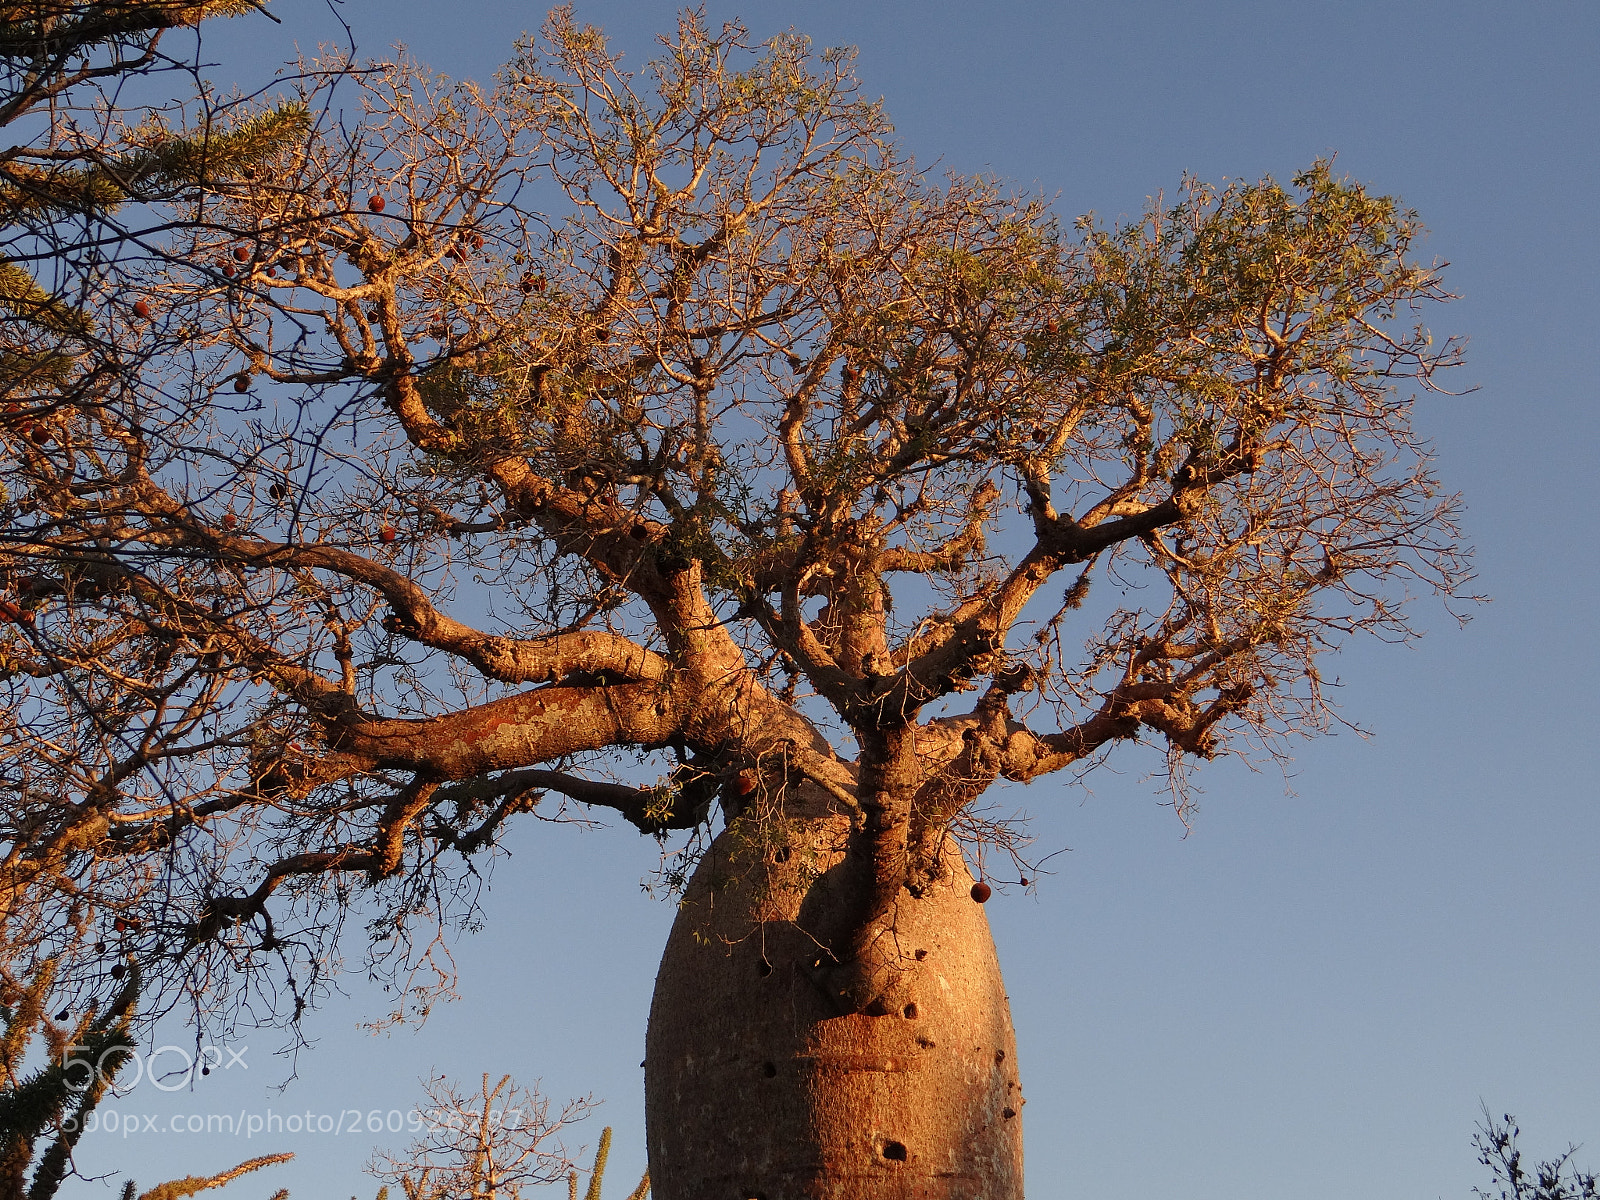 Sony DSC-HX200V sample photo. Baobab photography